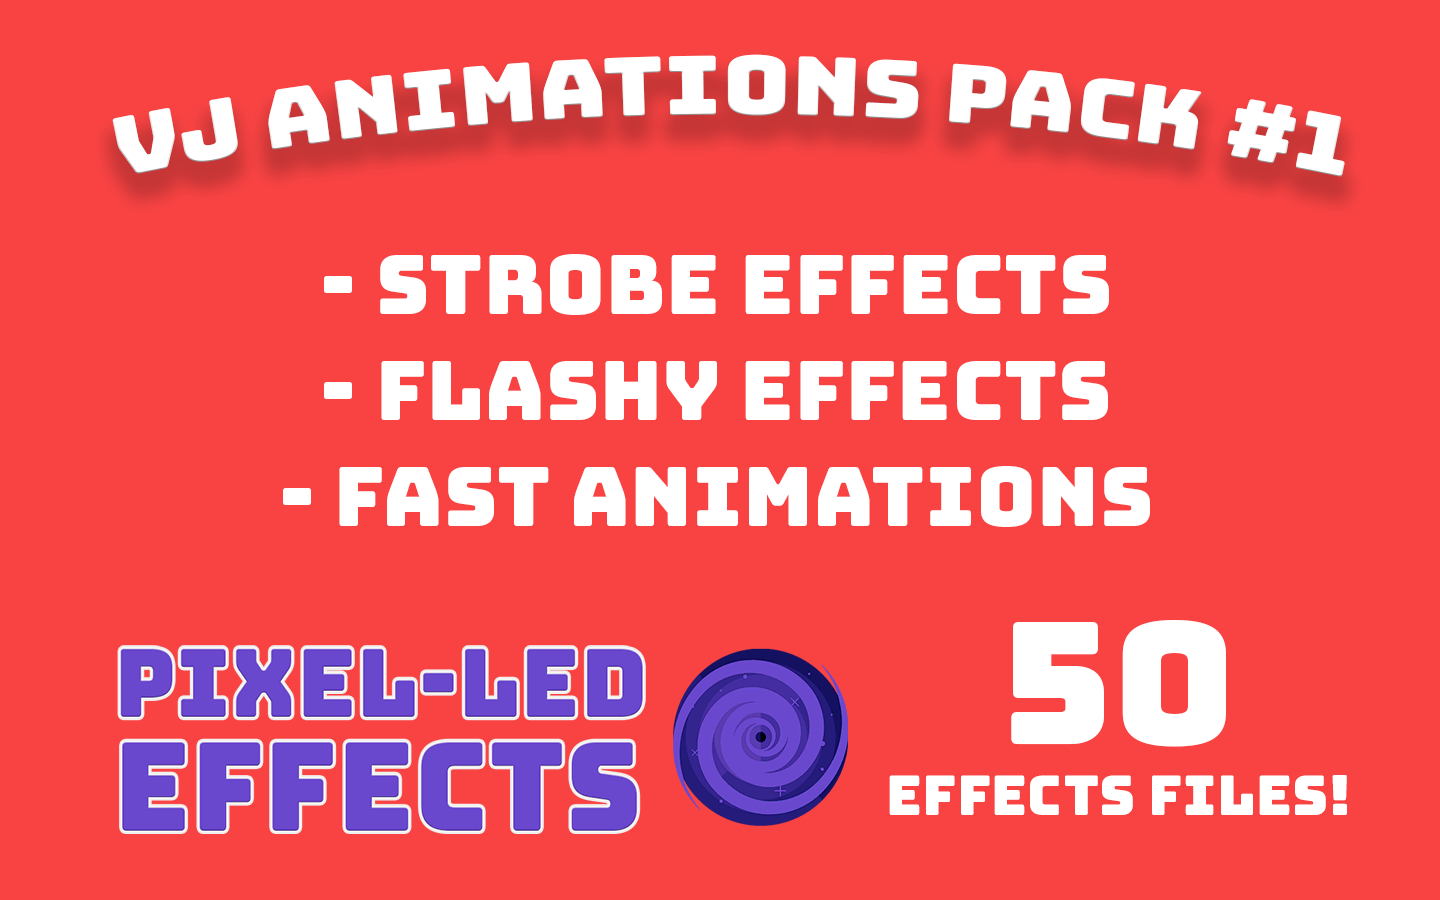 Strobe Flash VJ Animations Pack #1